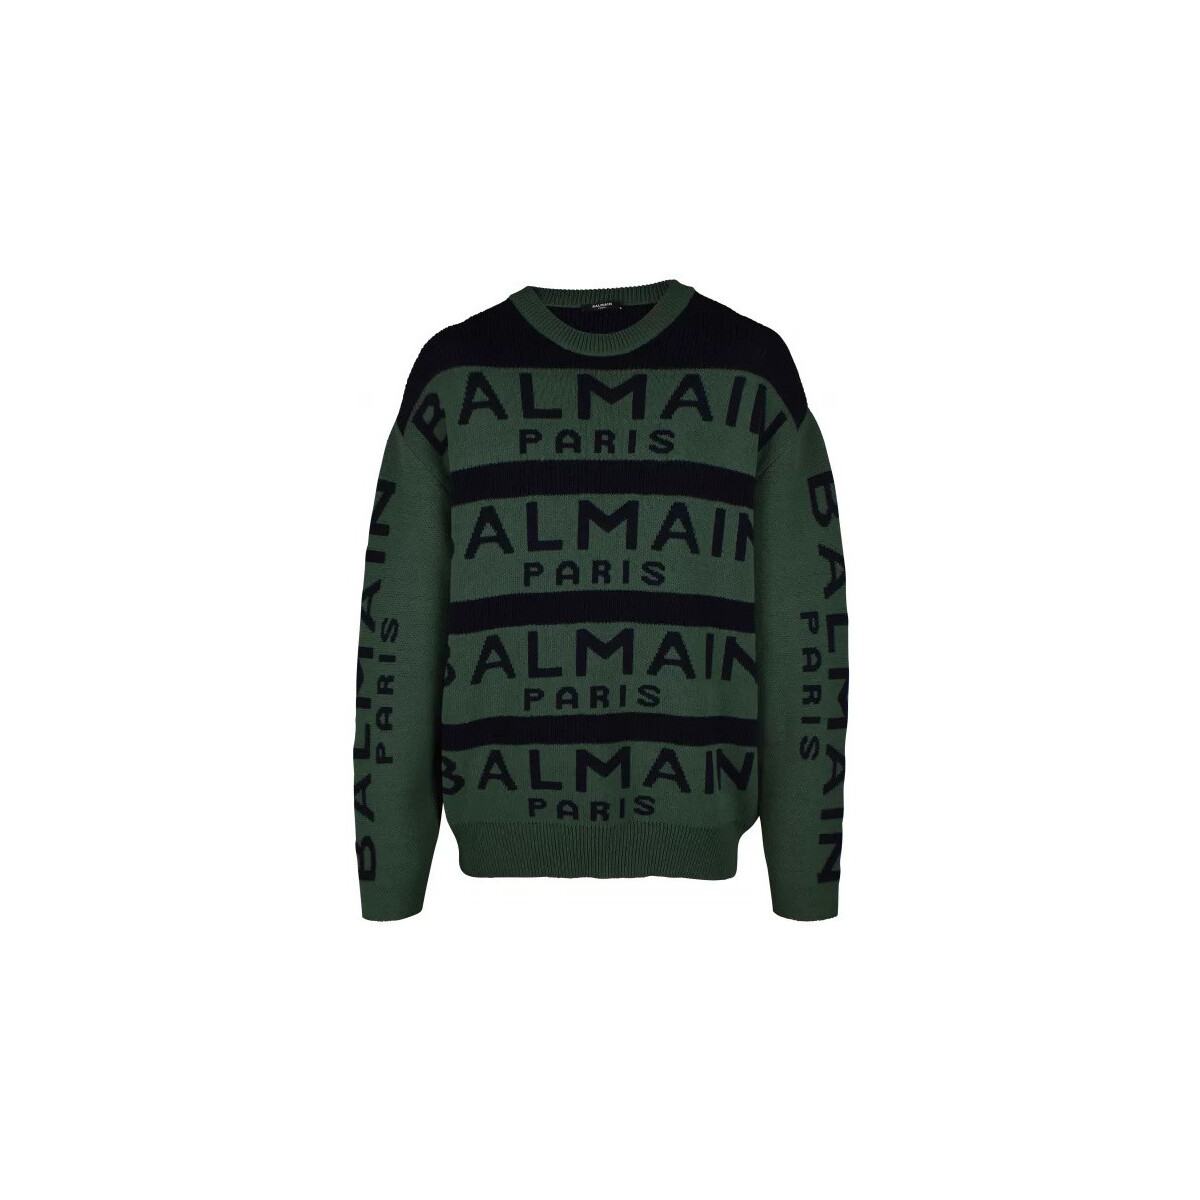 Textiel Heren Sweaters / Sweatshirts Balmain  Groen